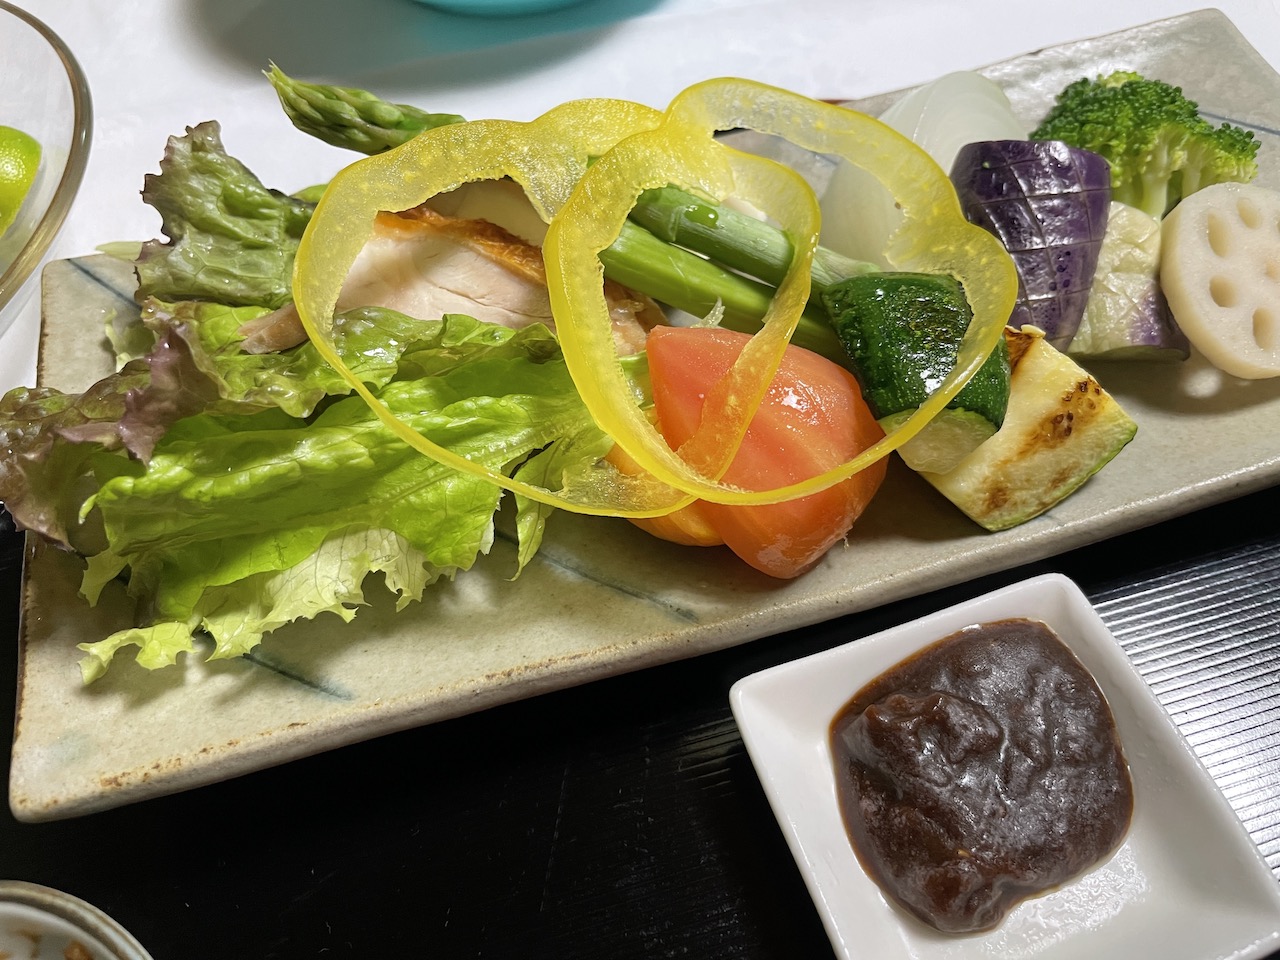 「屋島の宿桃太郎」の夜ご飯蒸し野菜の画像